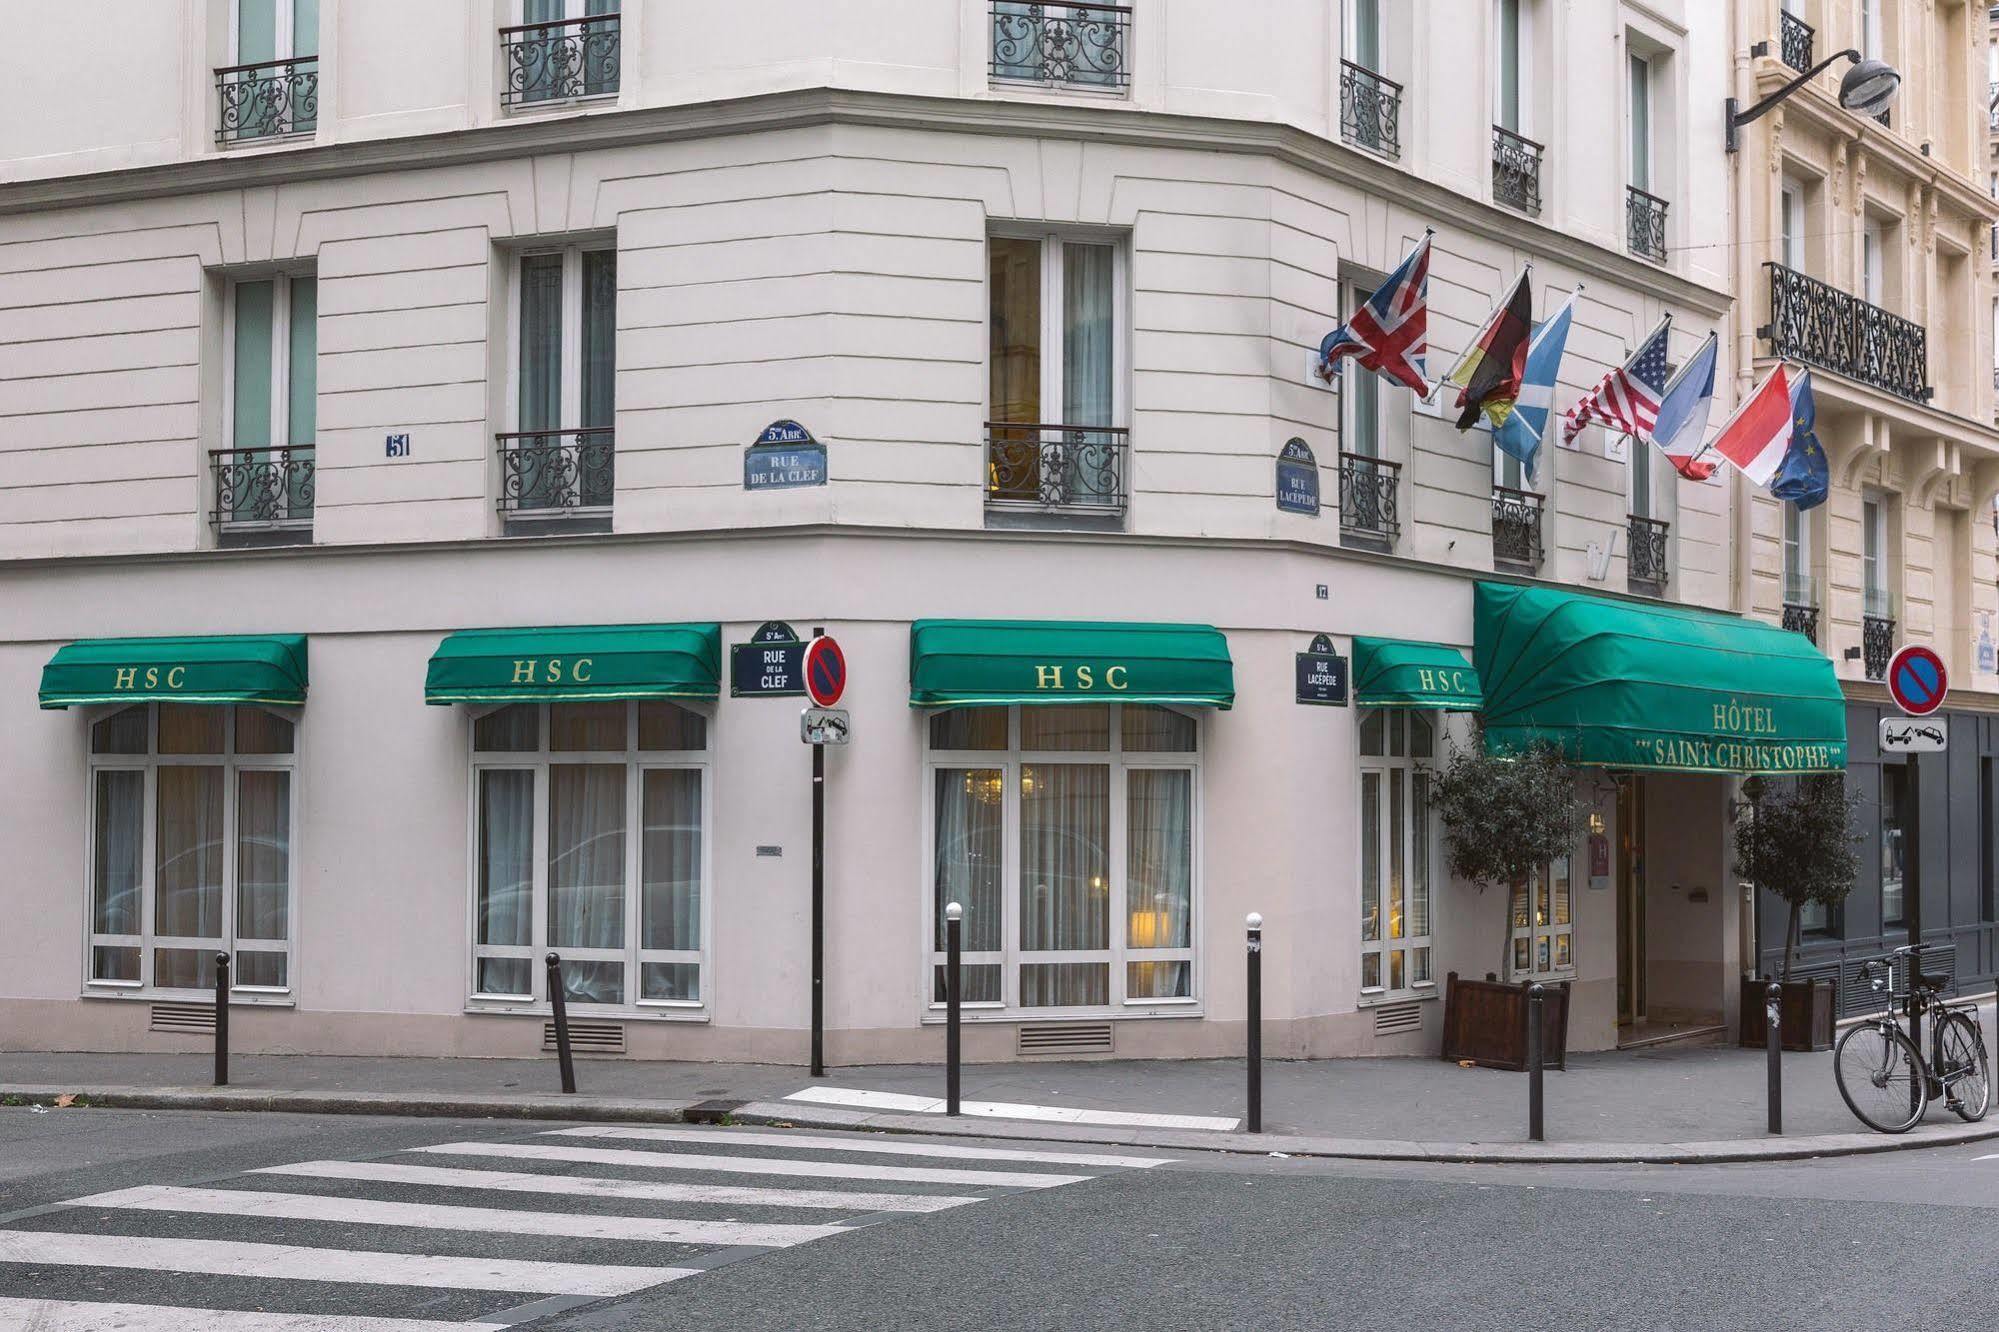 Hotel Saint Christophe Paris Exterior foto